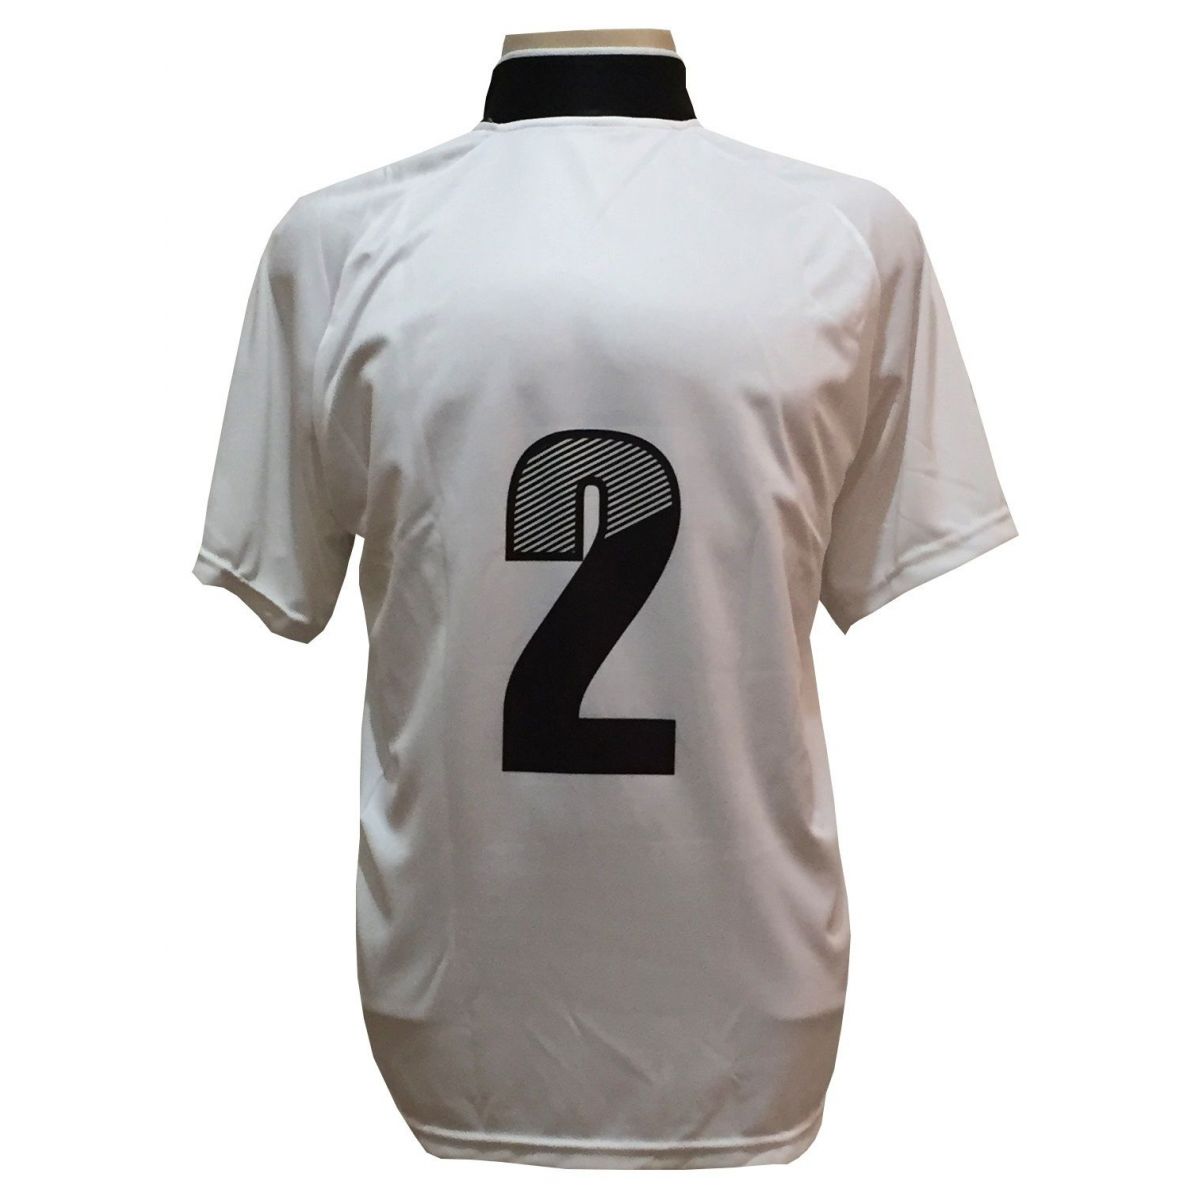 Uniforme Esportivo com 18 camisas modelo Milan Branco/Preto + 18 calções modelo Madrid Branco + Brindes